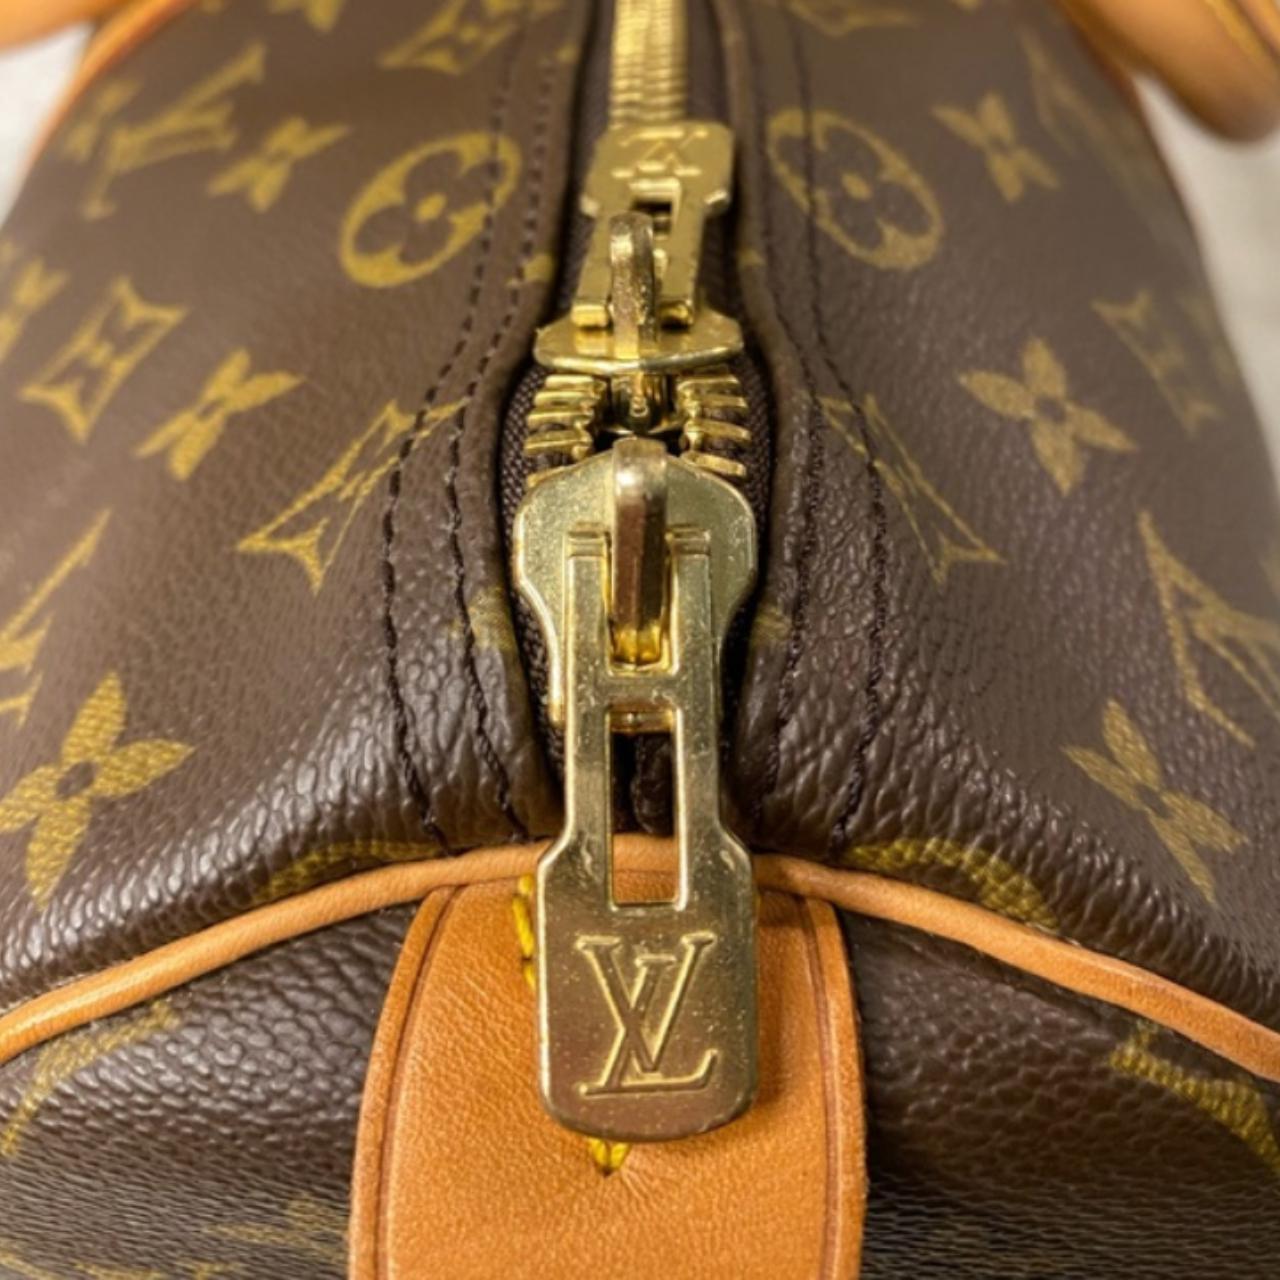 Louis Vuitton keep all duffel bag. I had the Richie - Depop